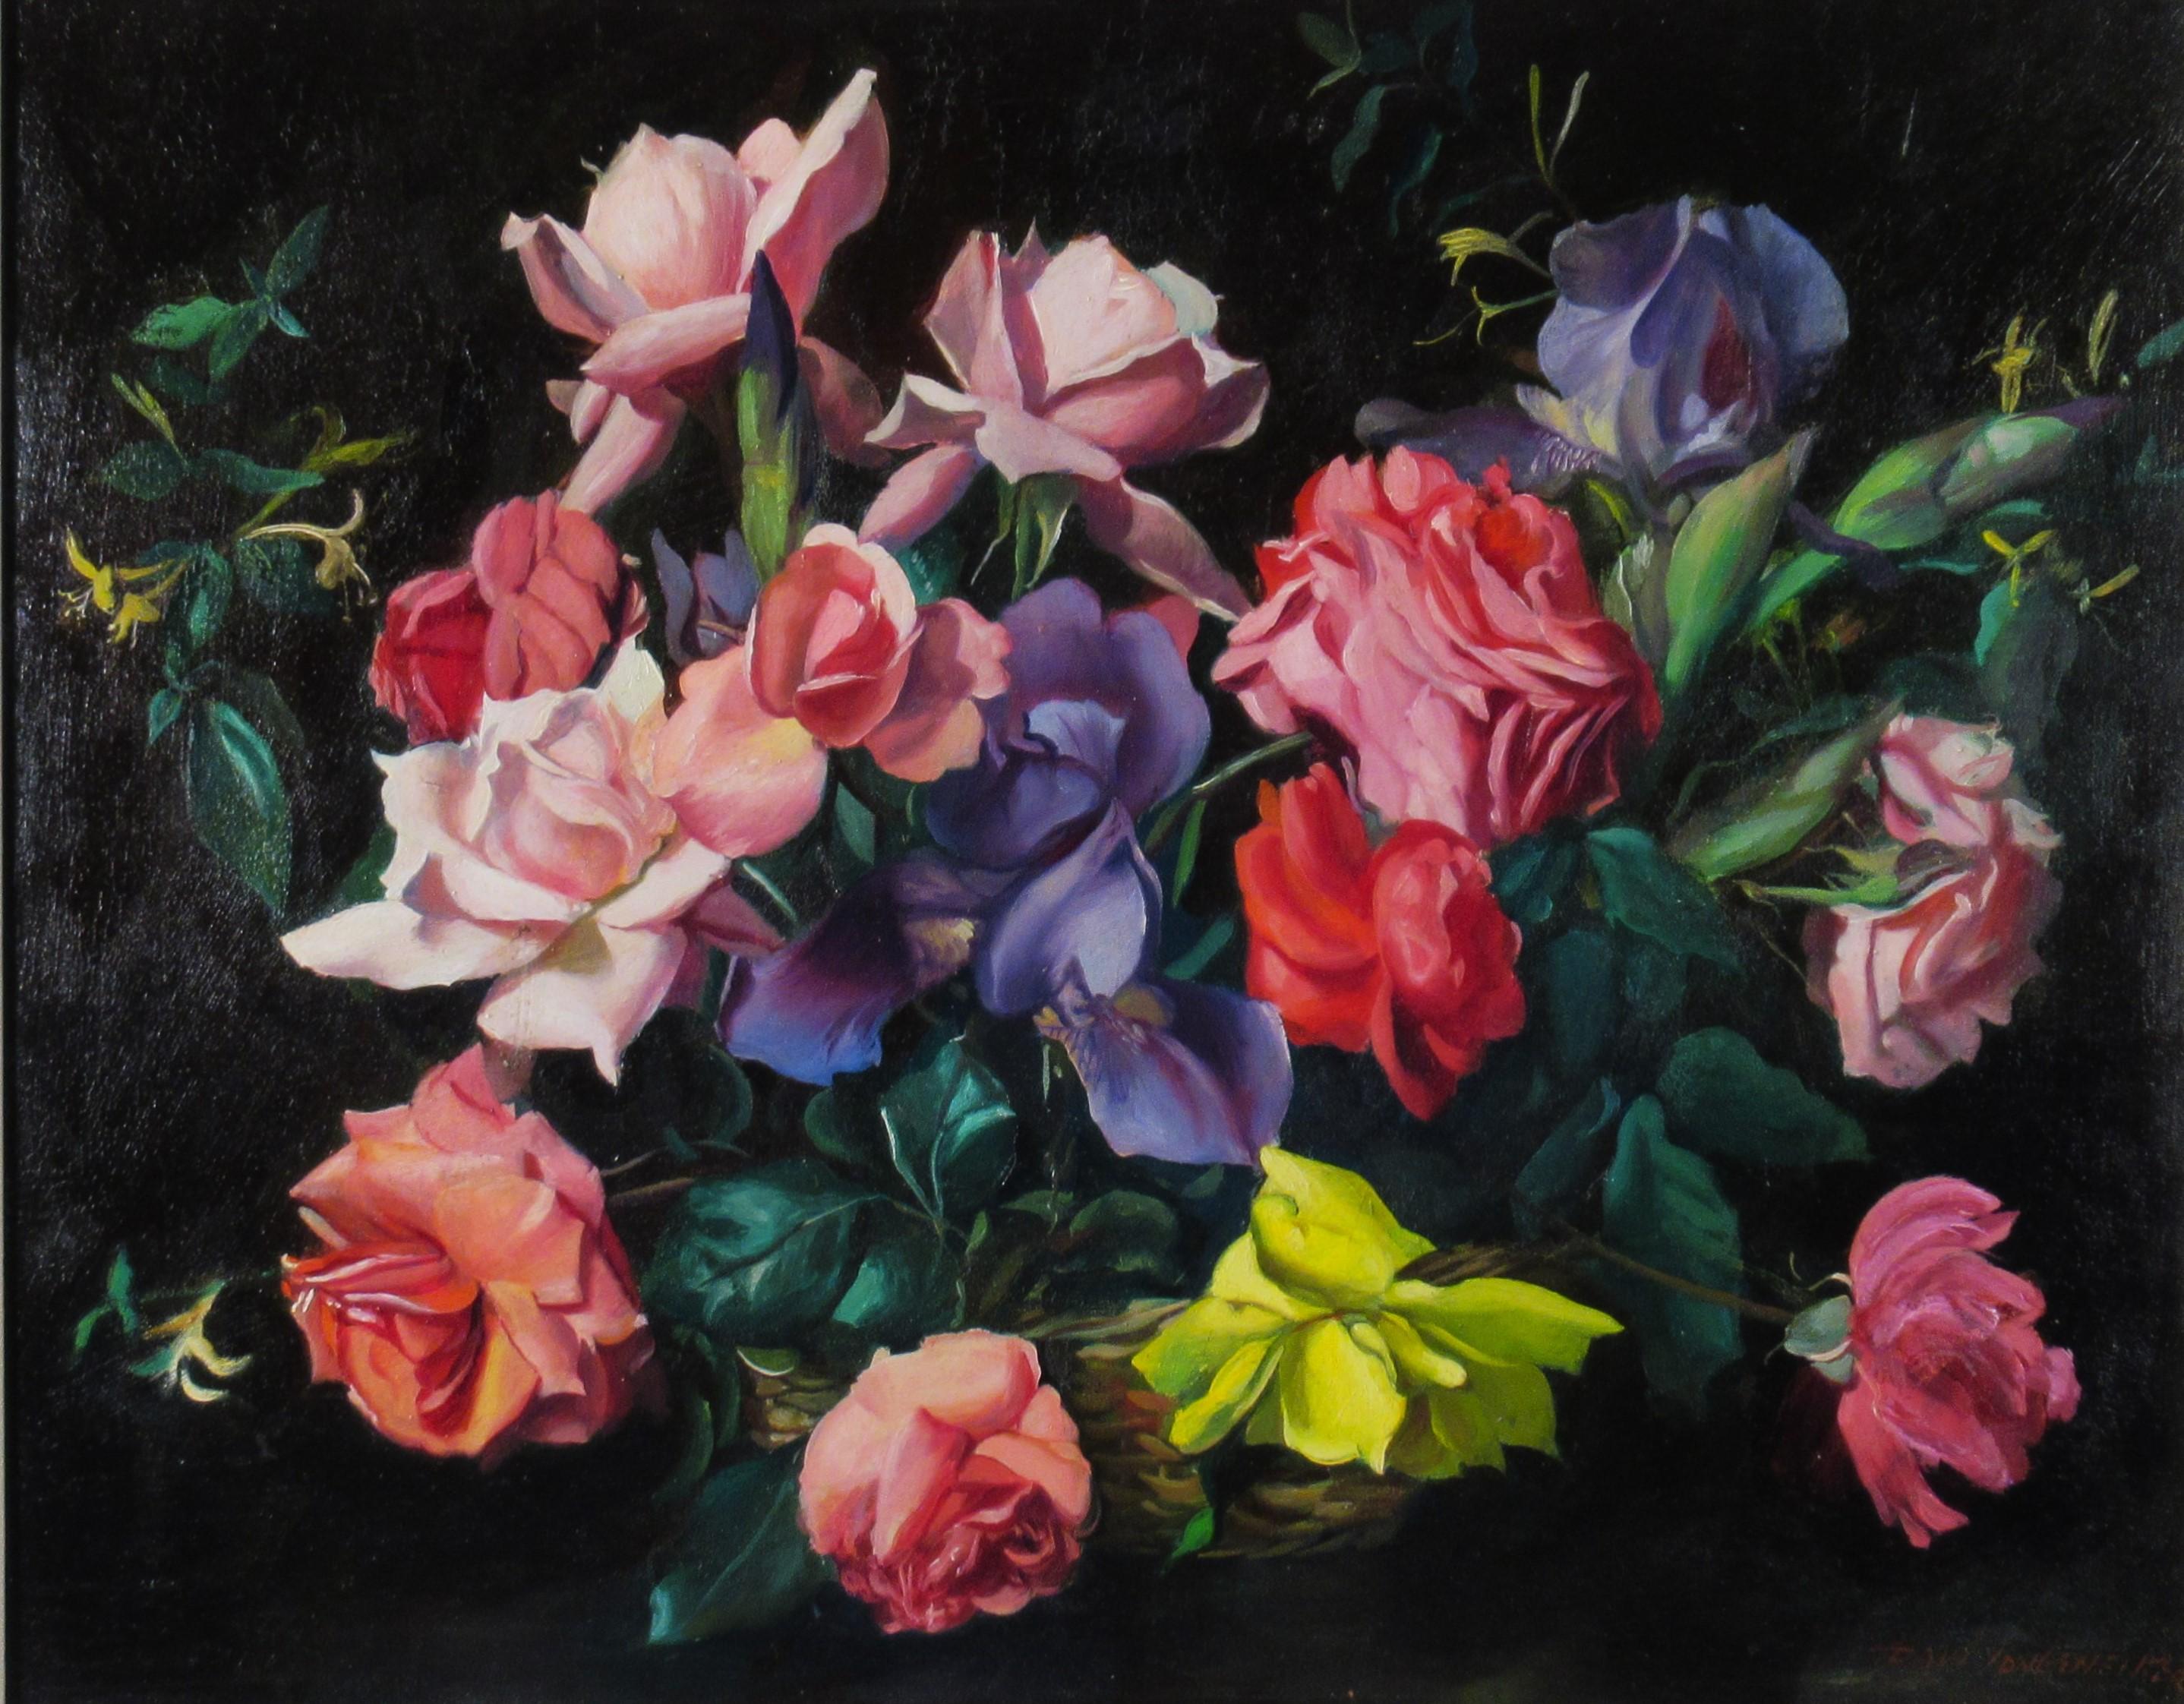 Flowers Basket - Painting by Paul Longenecker